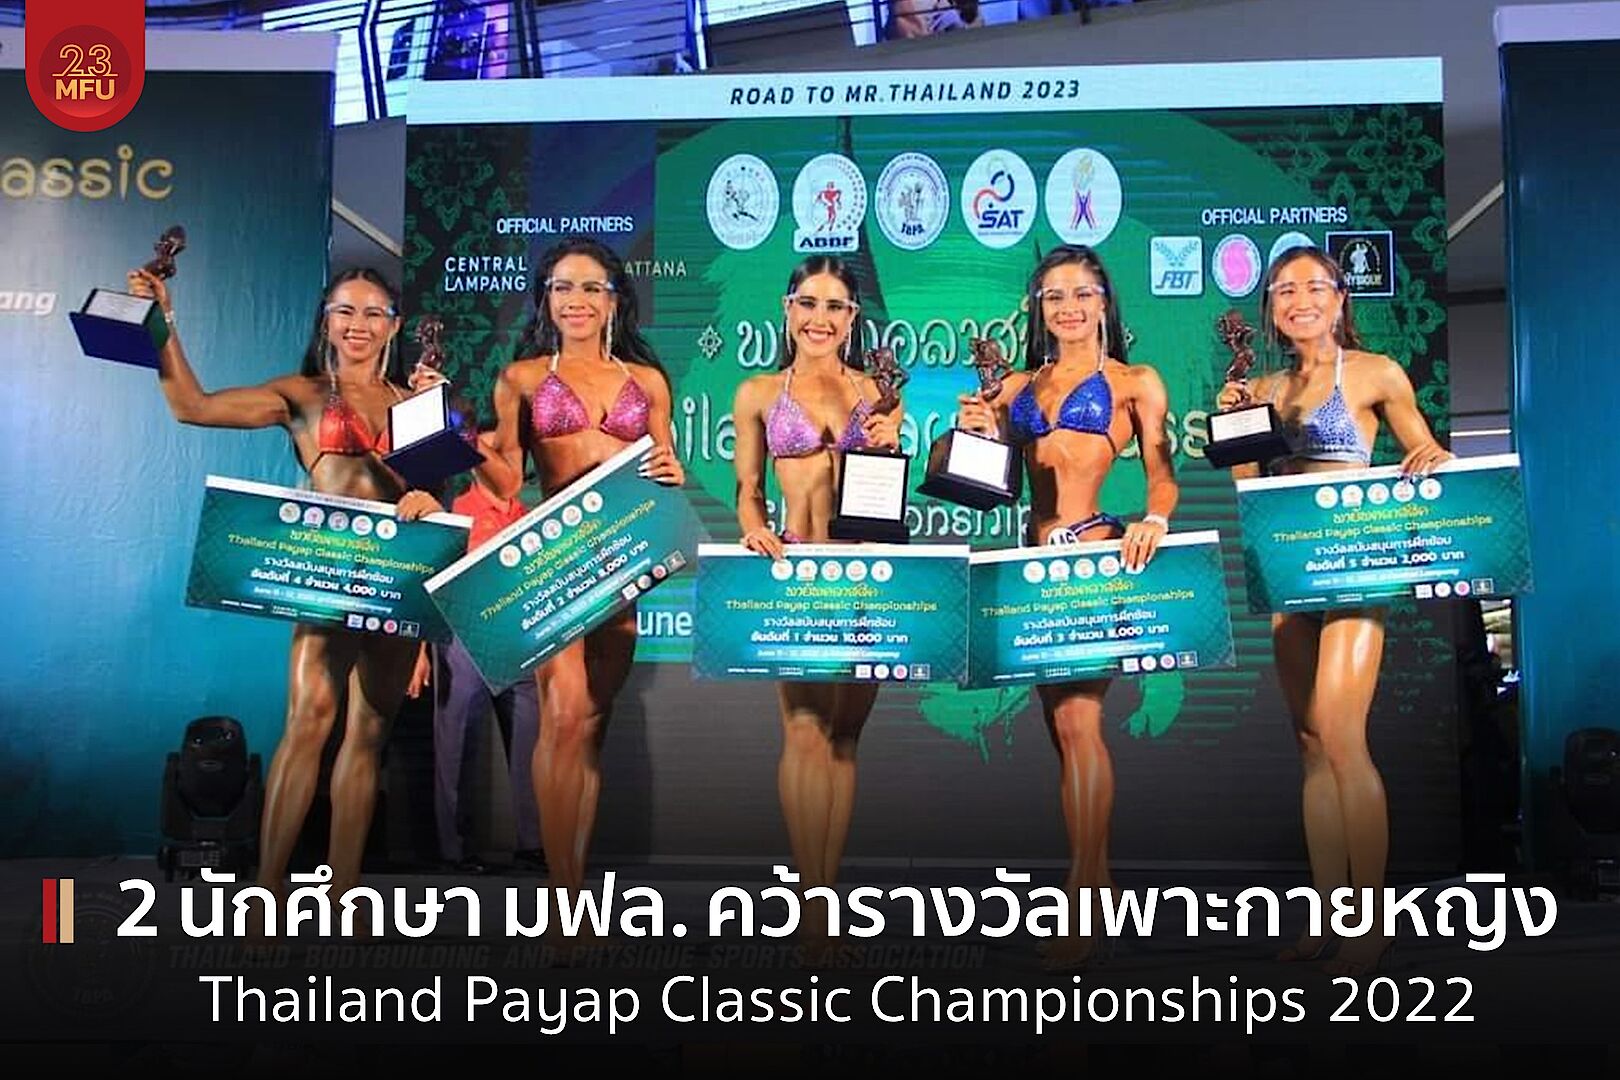 2 นักศึกษา มฟล. คว้ารางวัลเพาะกายหญิง จากการแข่งขัน Thailand Payap Classic Championships 2022